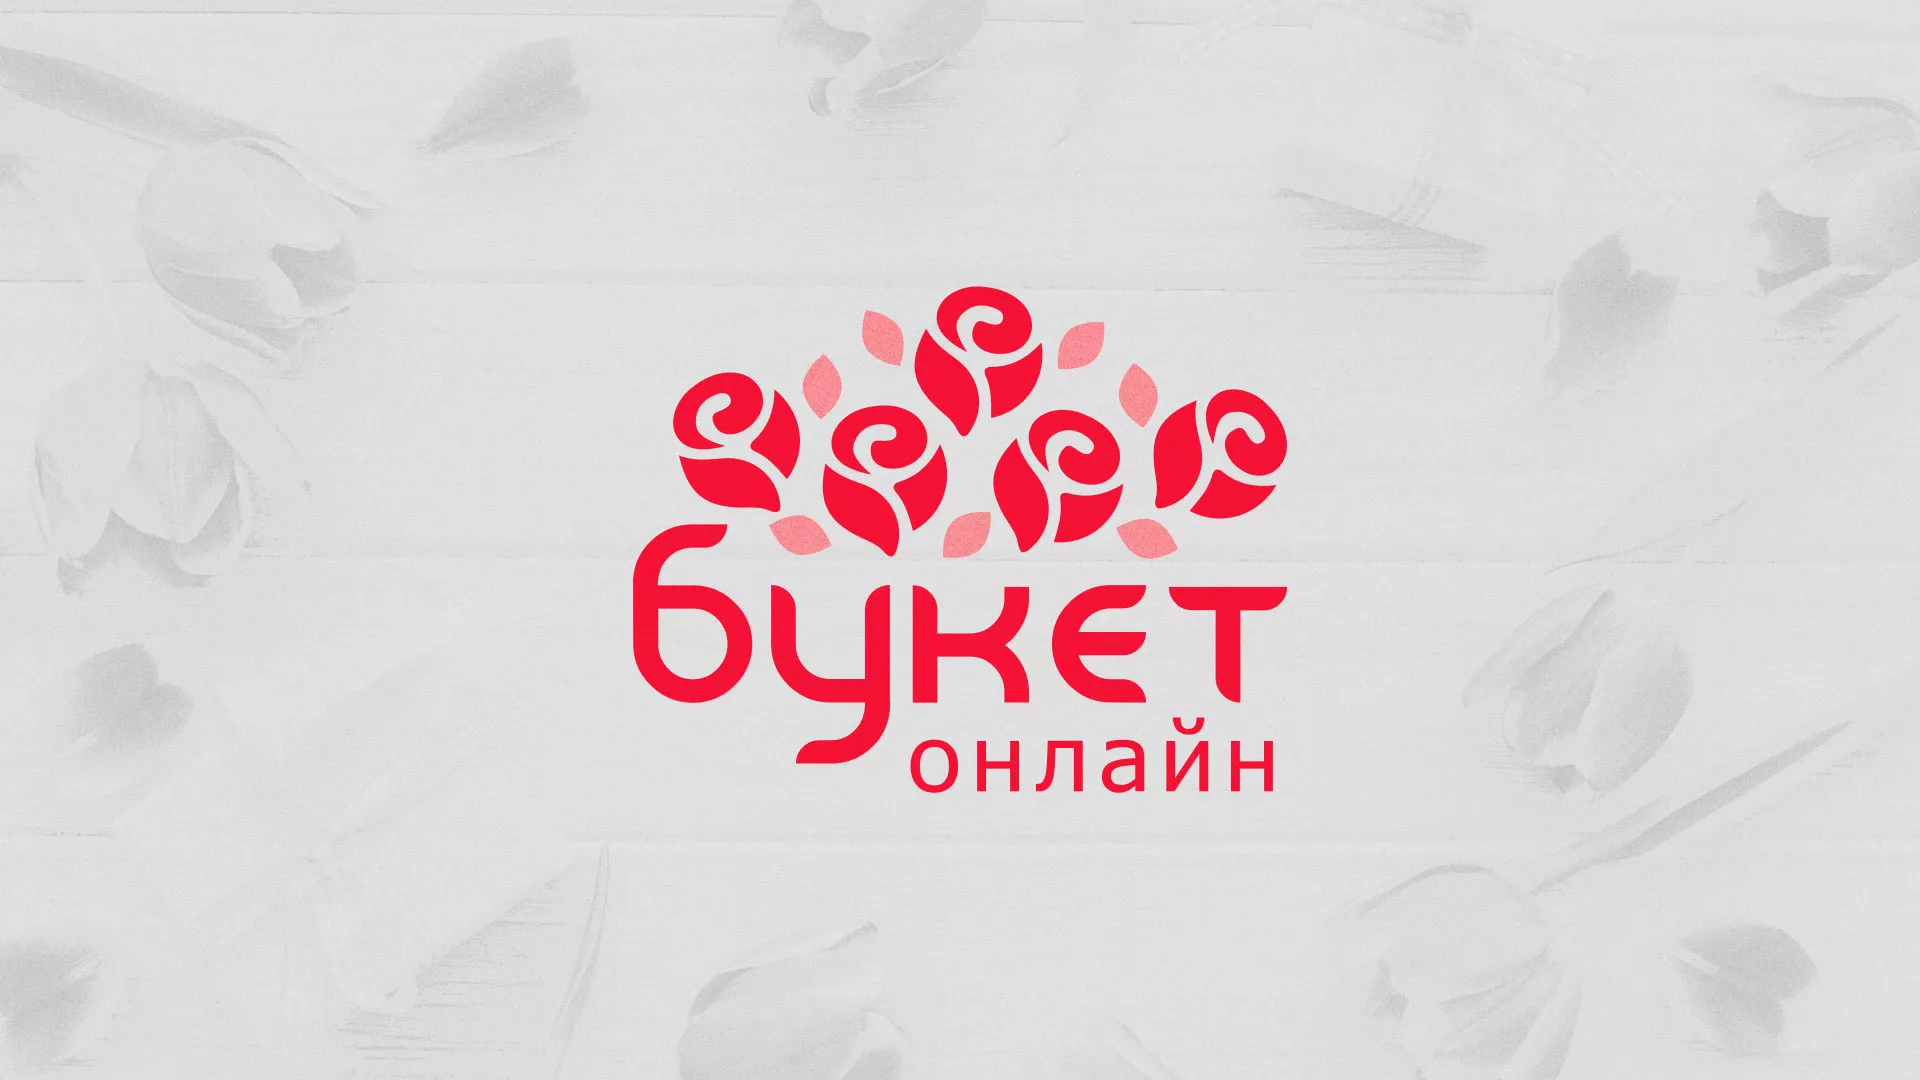 Создание интернет-магазина «Букет-онлайн» по цветам в Жукове